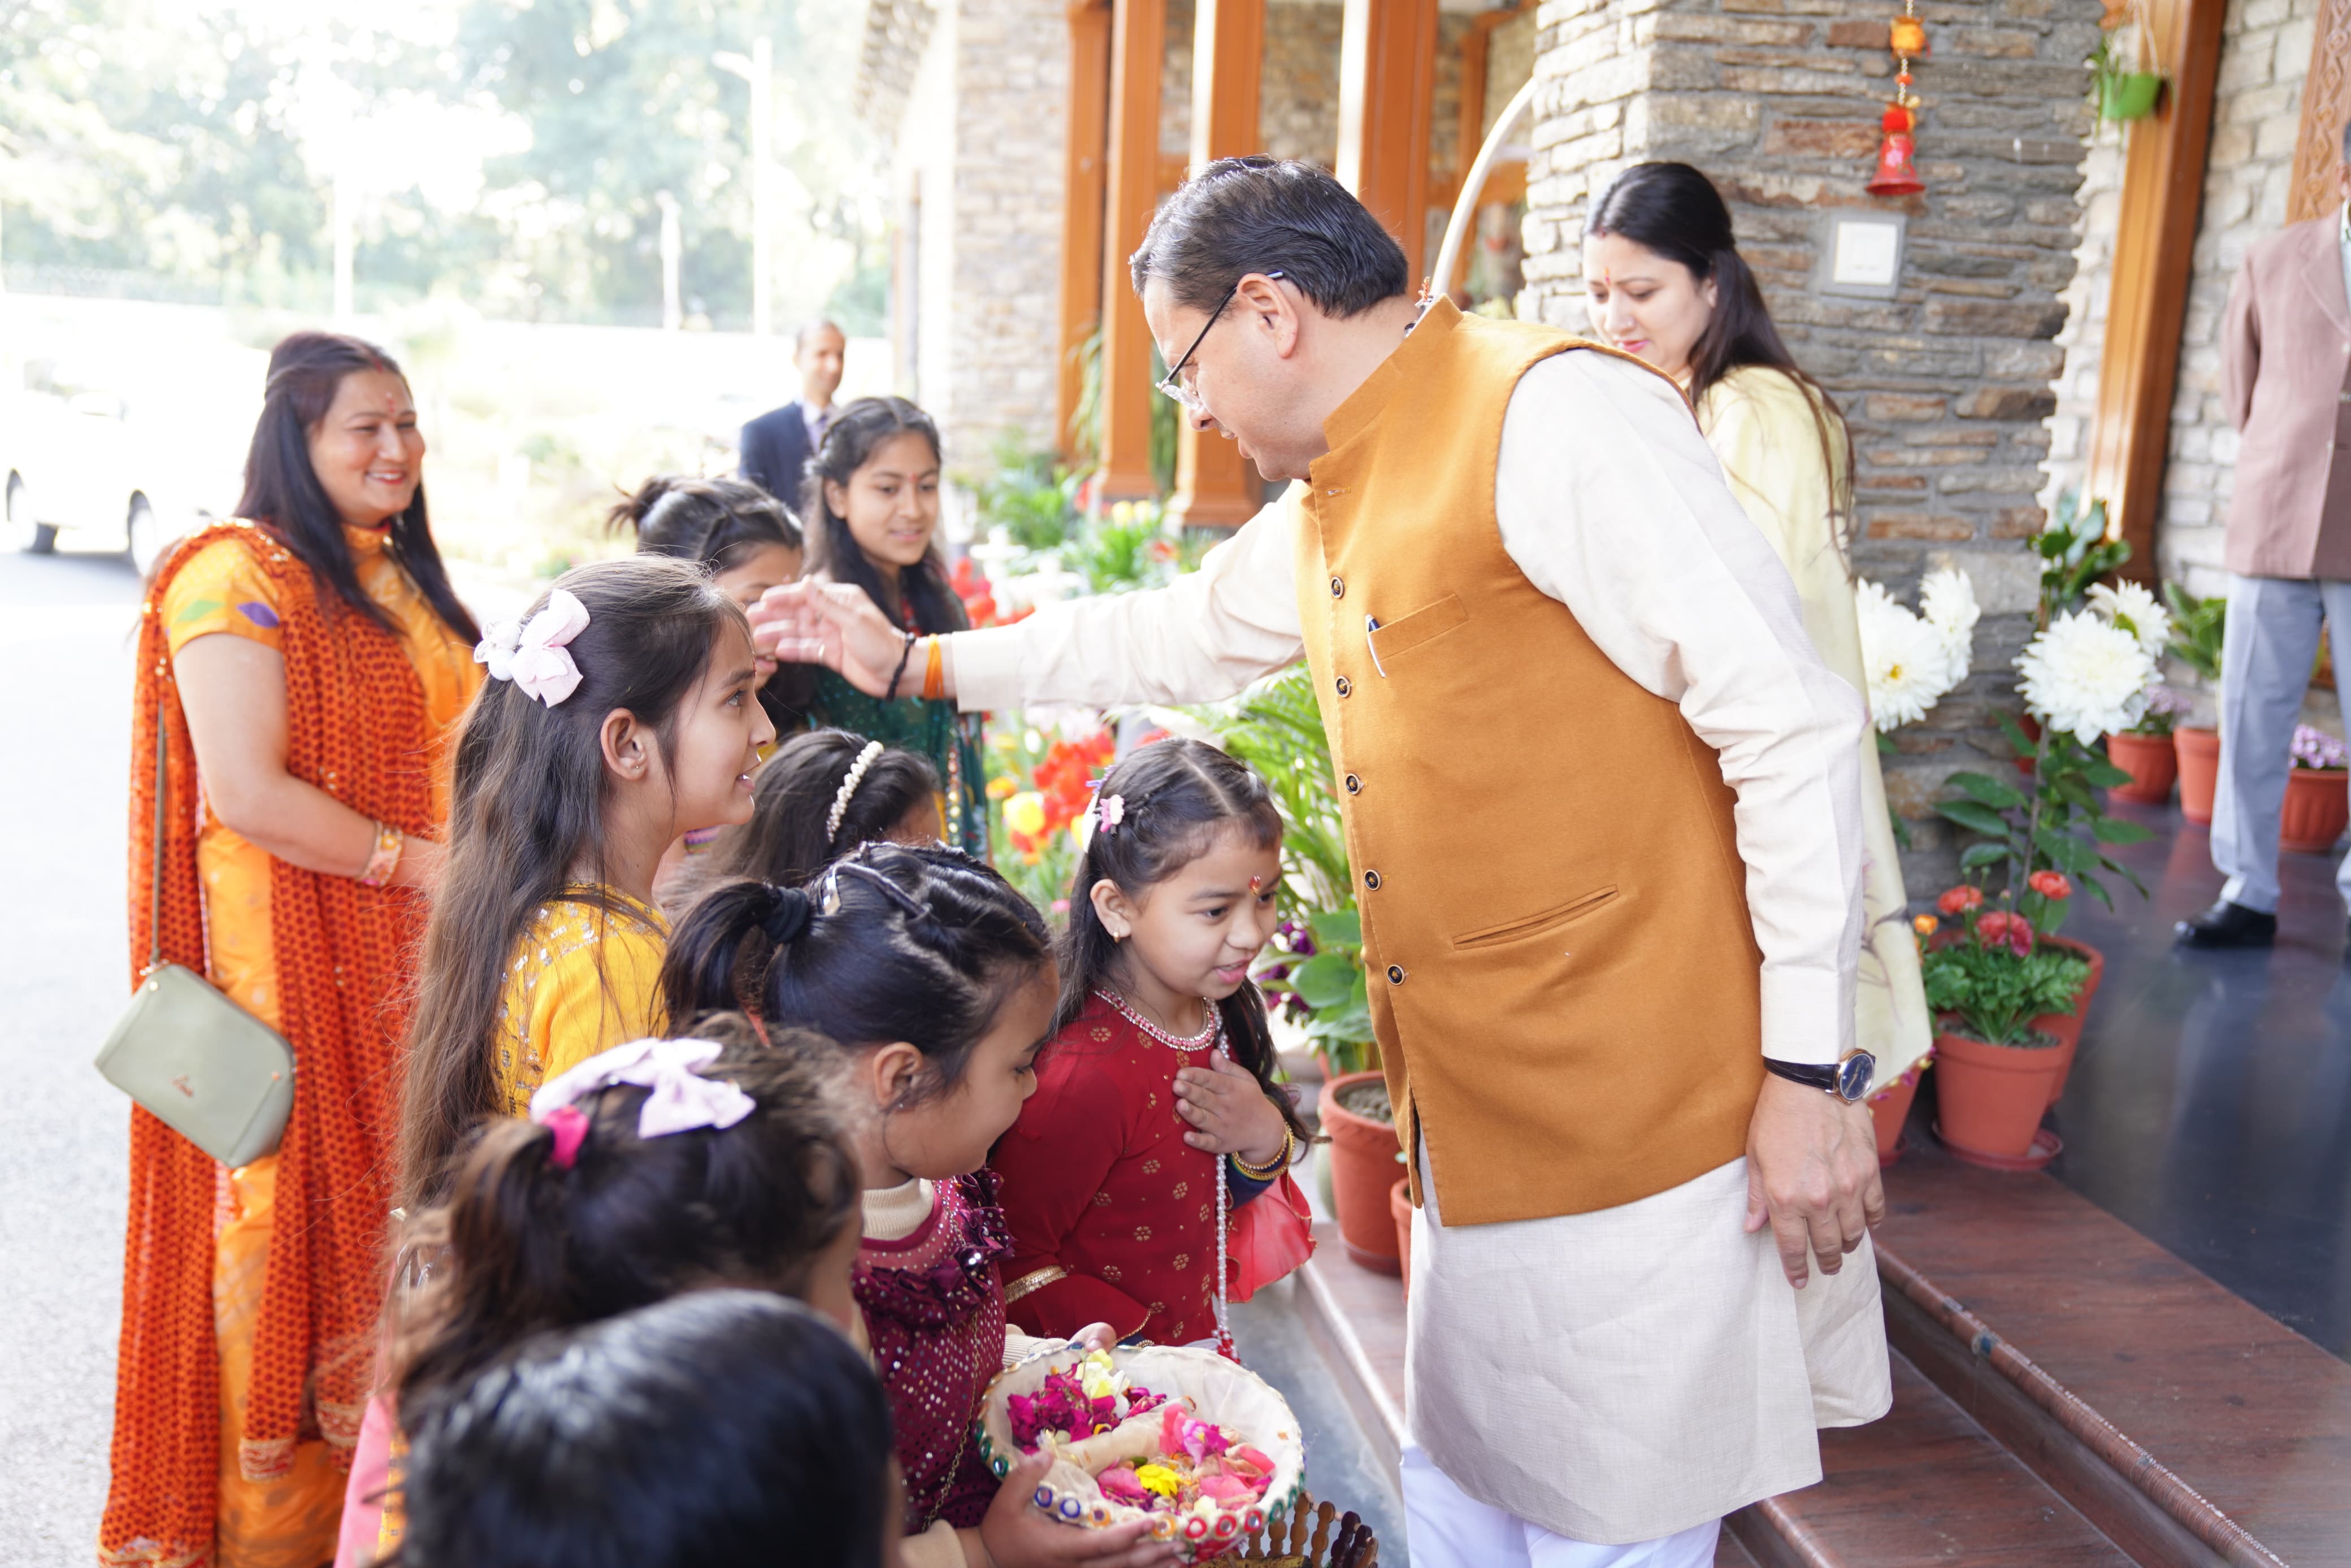 मुख्यमंत्री पुष्कर सिंह धामी मुख्यमंत्री आवास में बच्चों संग फूलदेई पर्व मनाते।